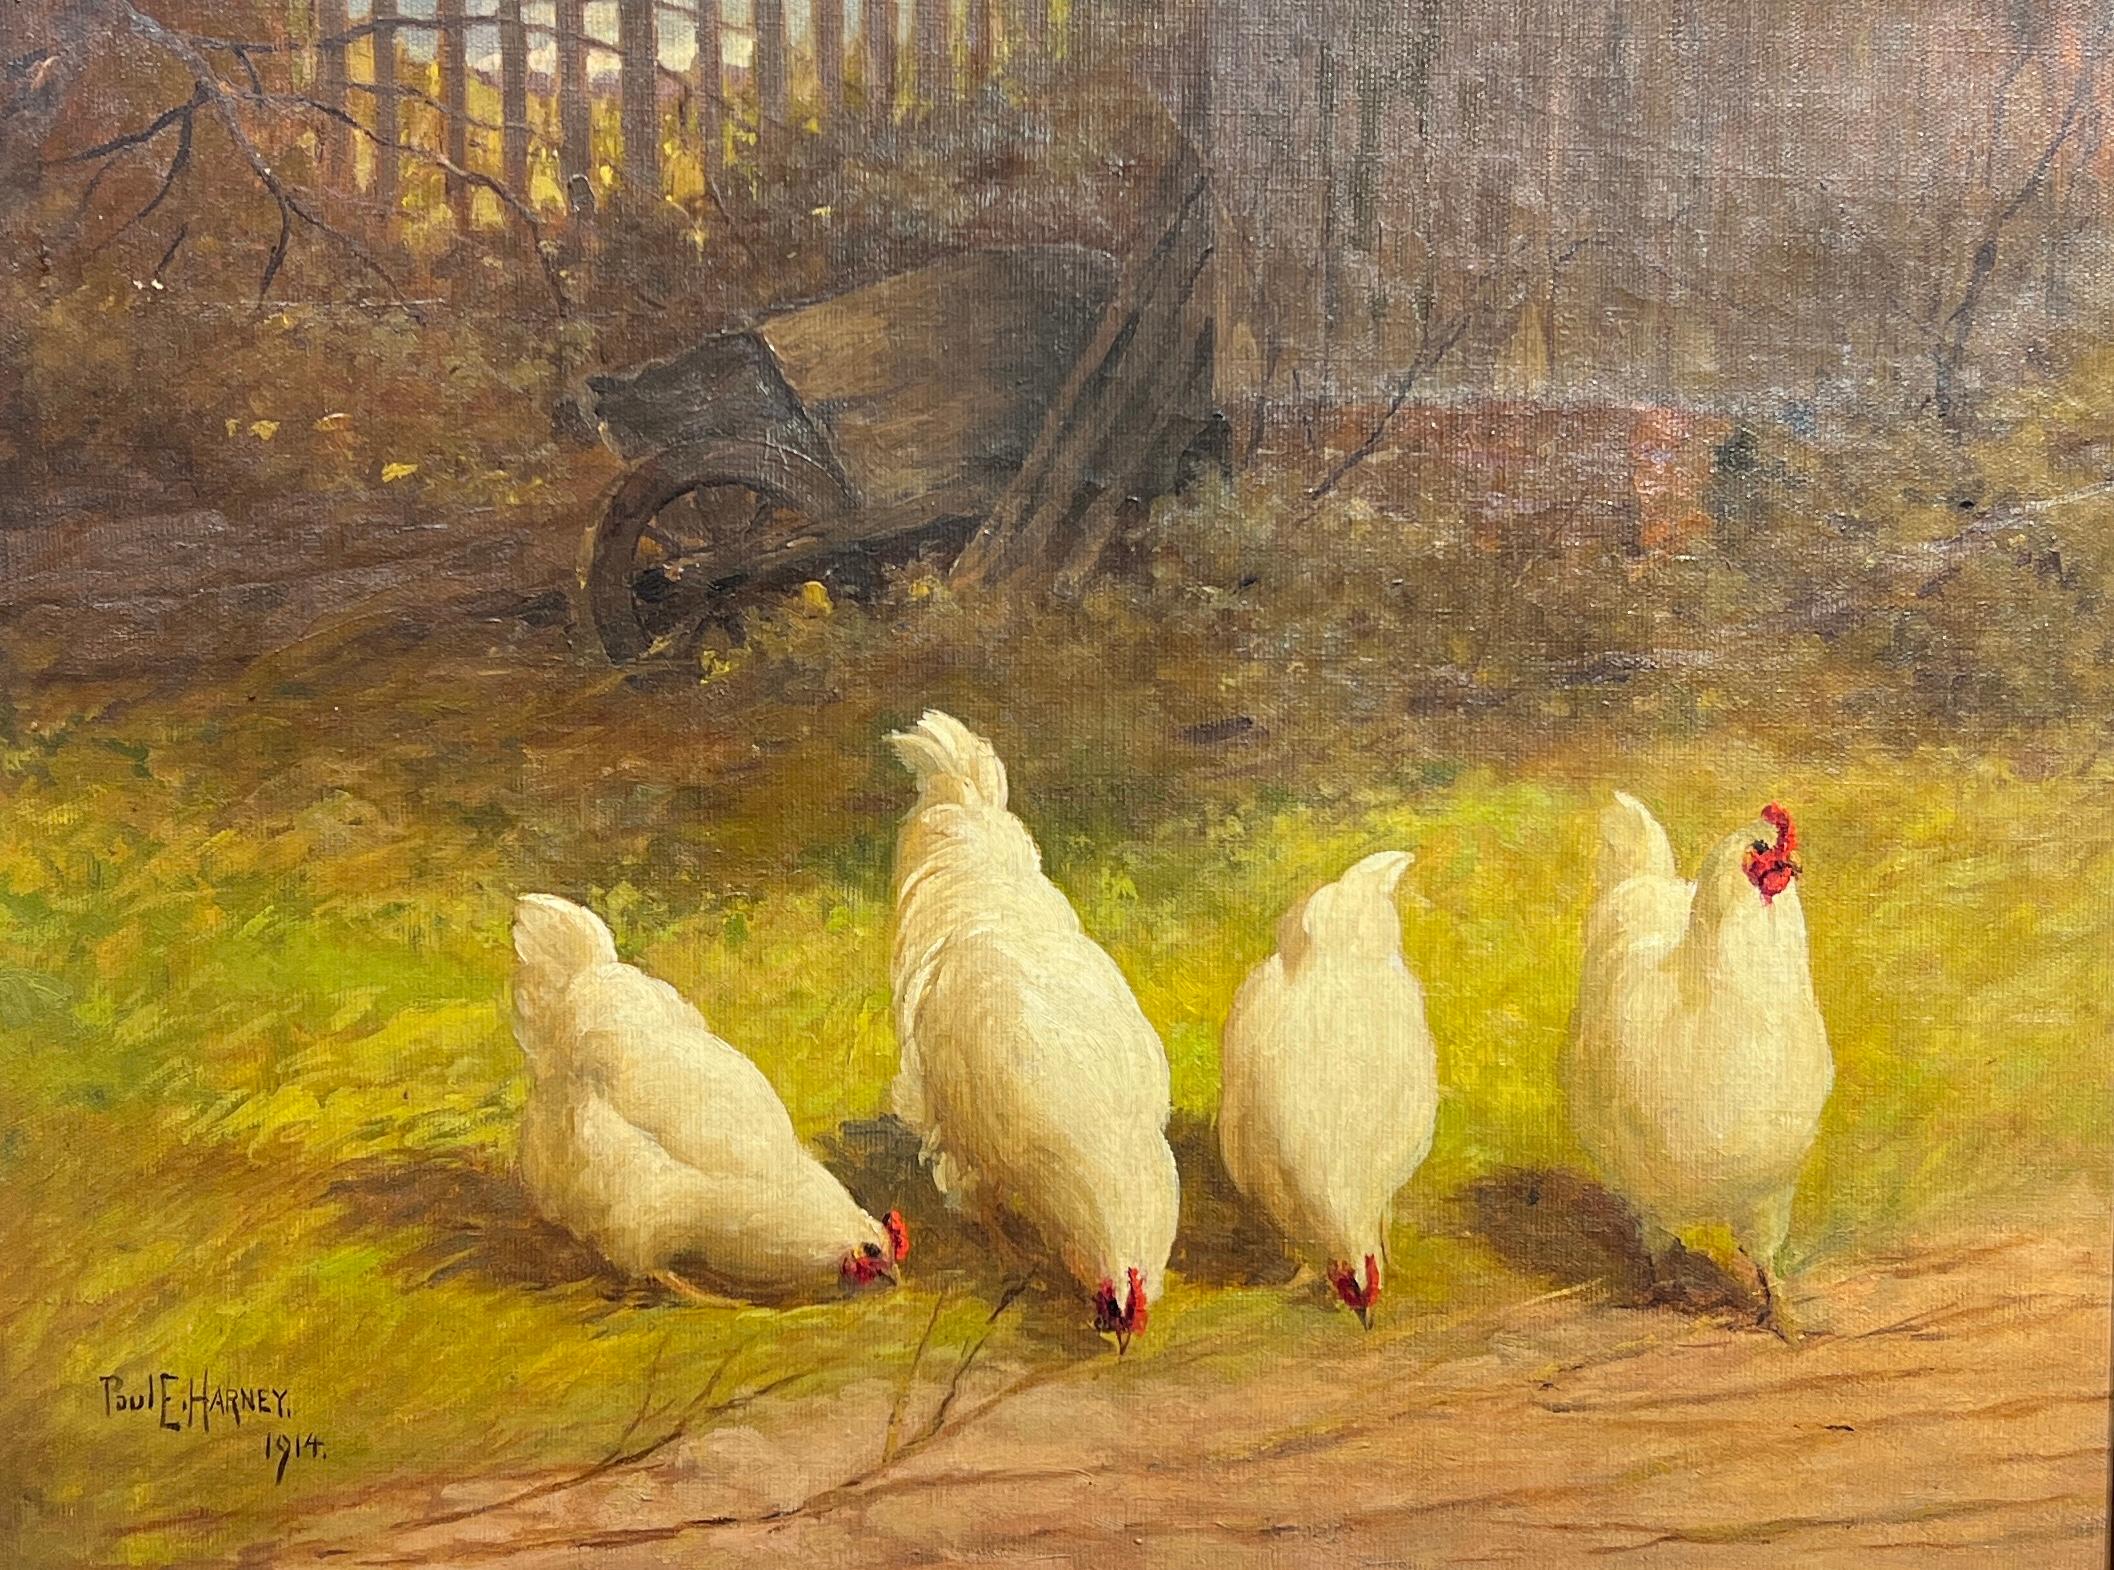 Paul E. Harney Jr. Animal Painting - Four White Hens